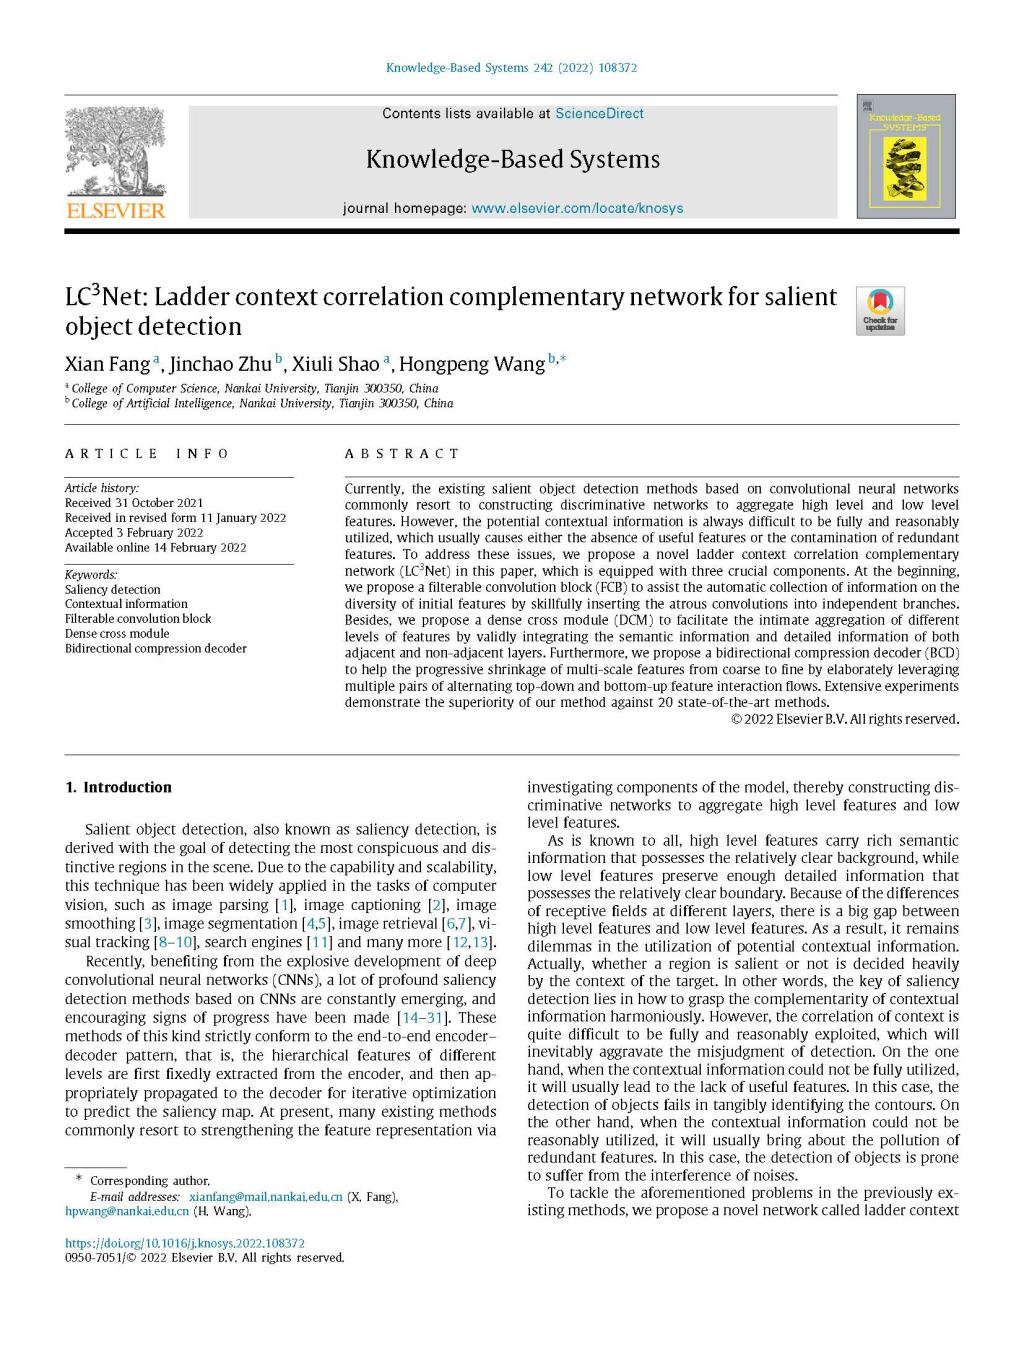 王鸿鹏课题组在Knowledge-Based Systems(SCI 1区)期刊发表论文"LC3Net: Ladder context correlation complementary network for salient object detection"